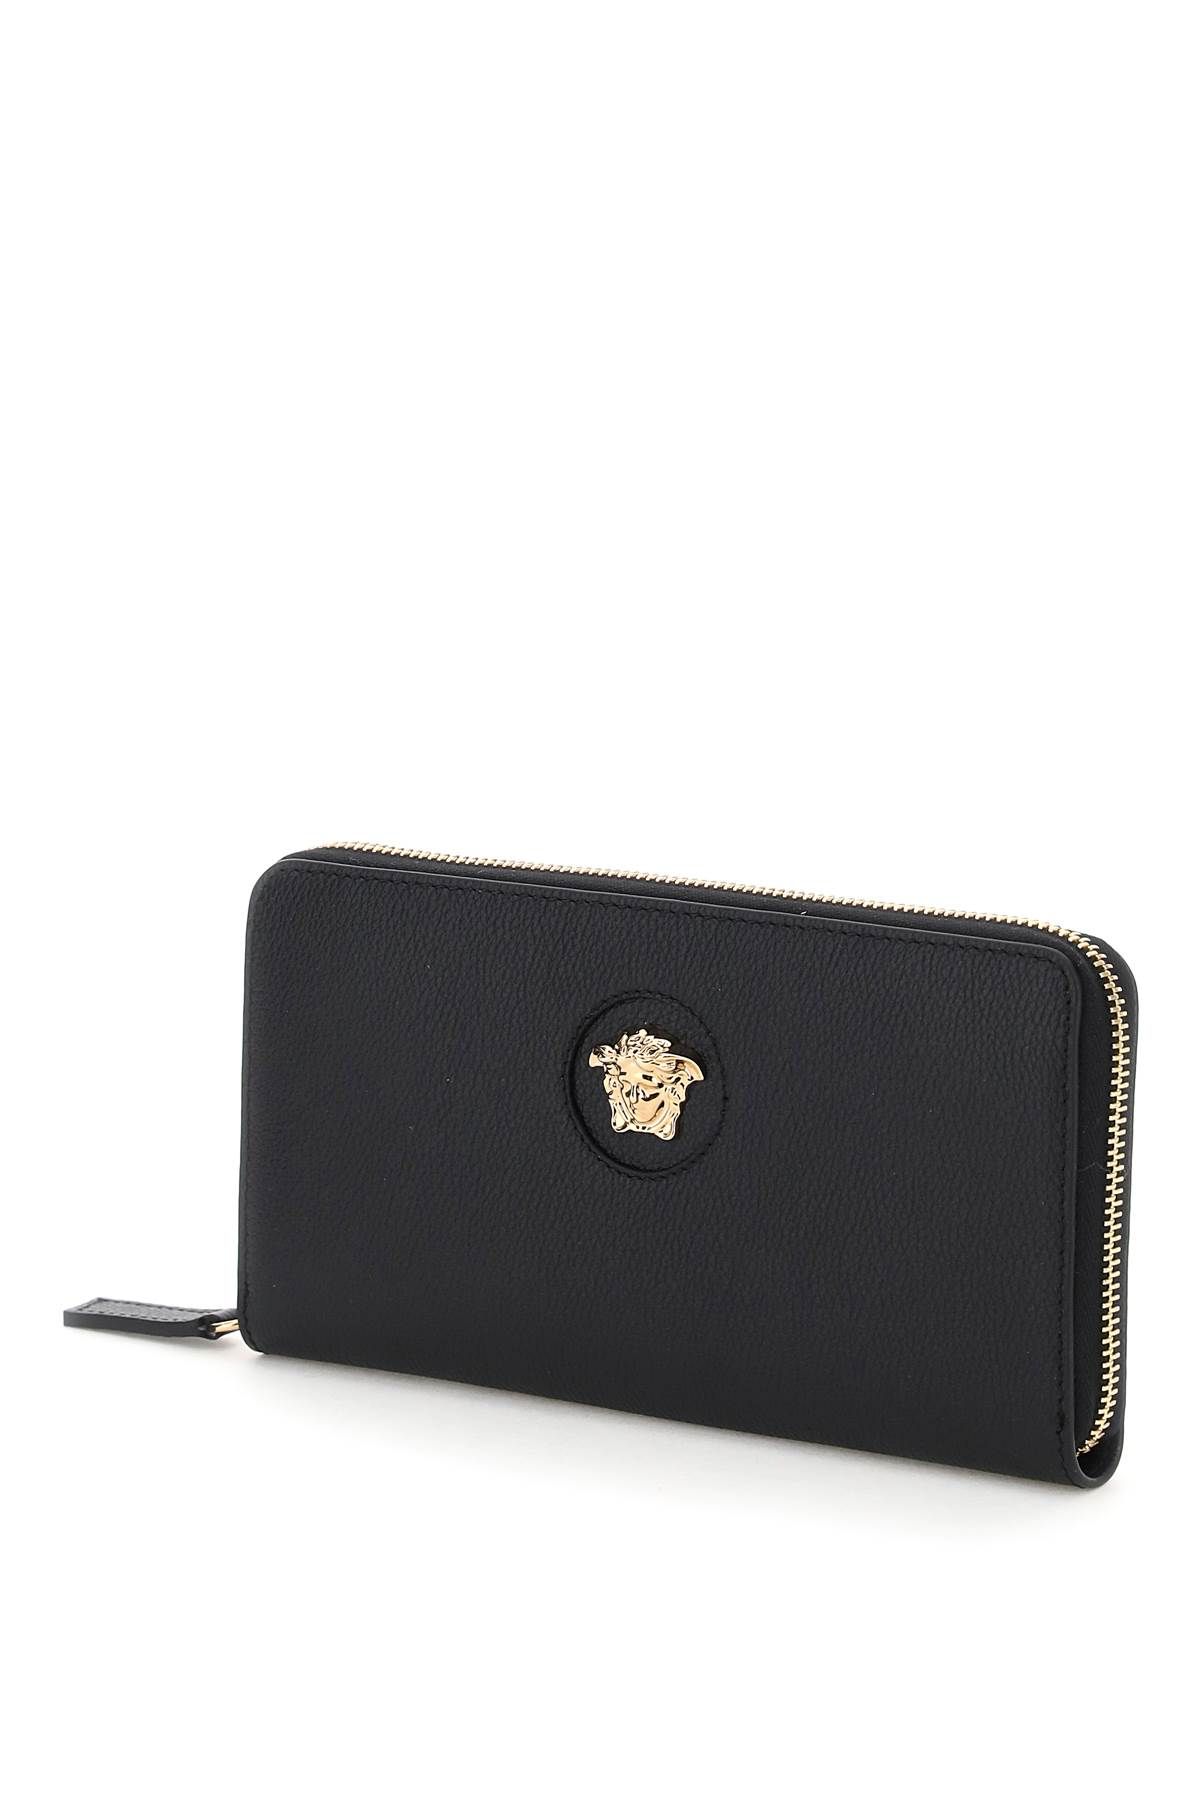 Shop Versace La Medusa Wallet In Black